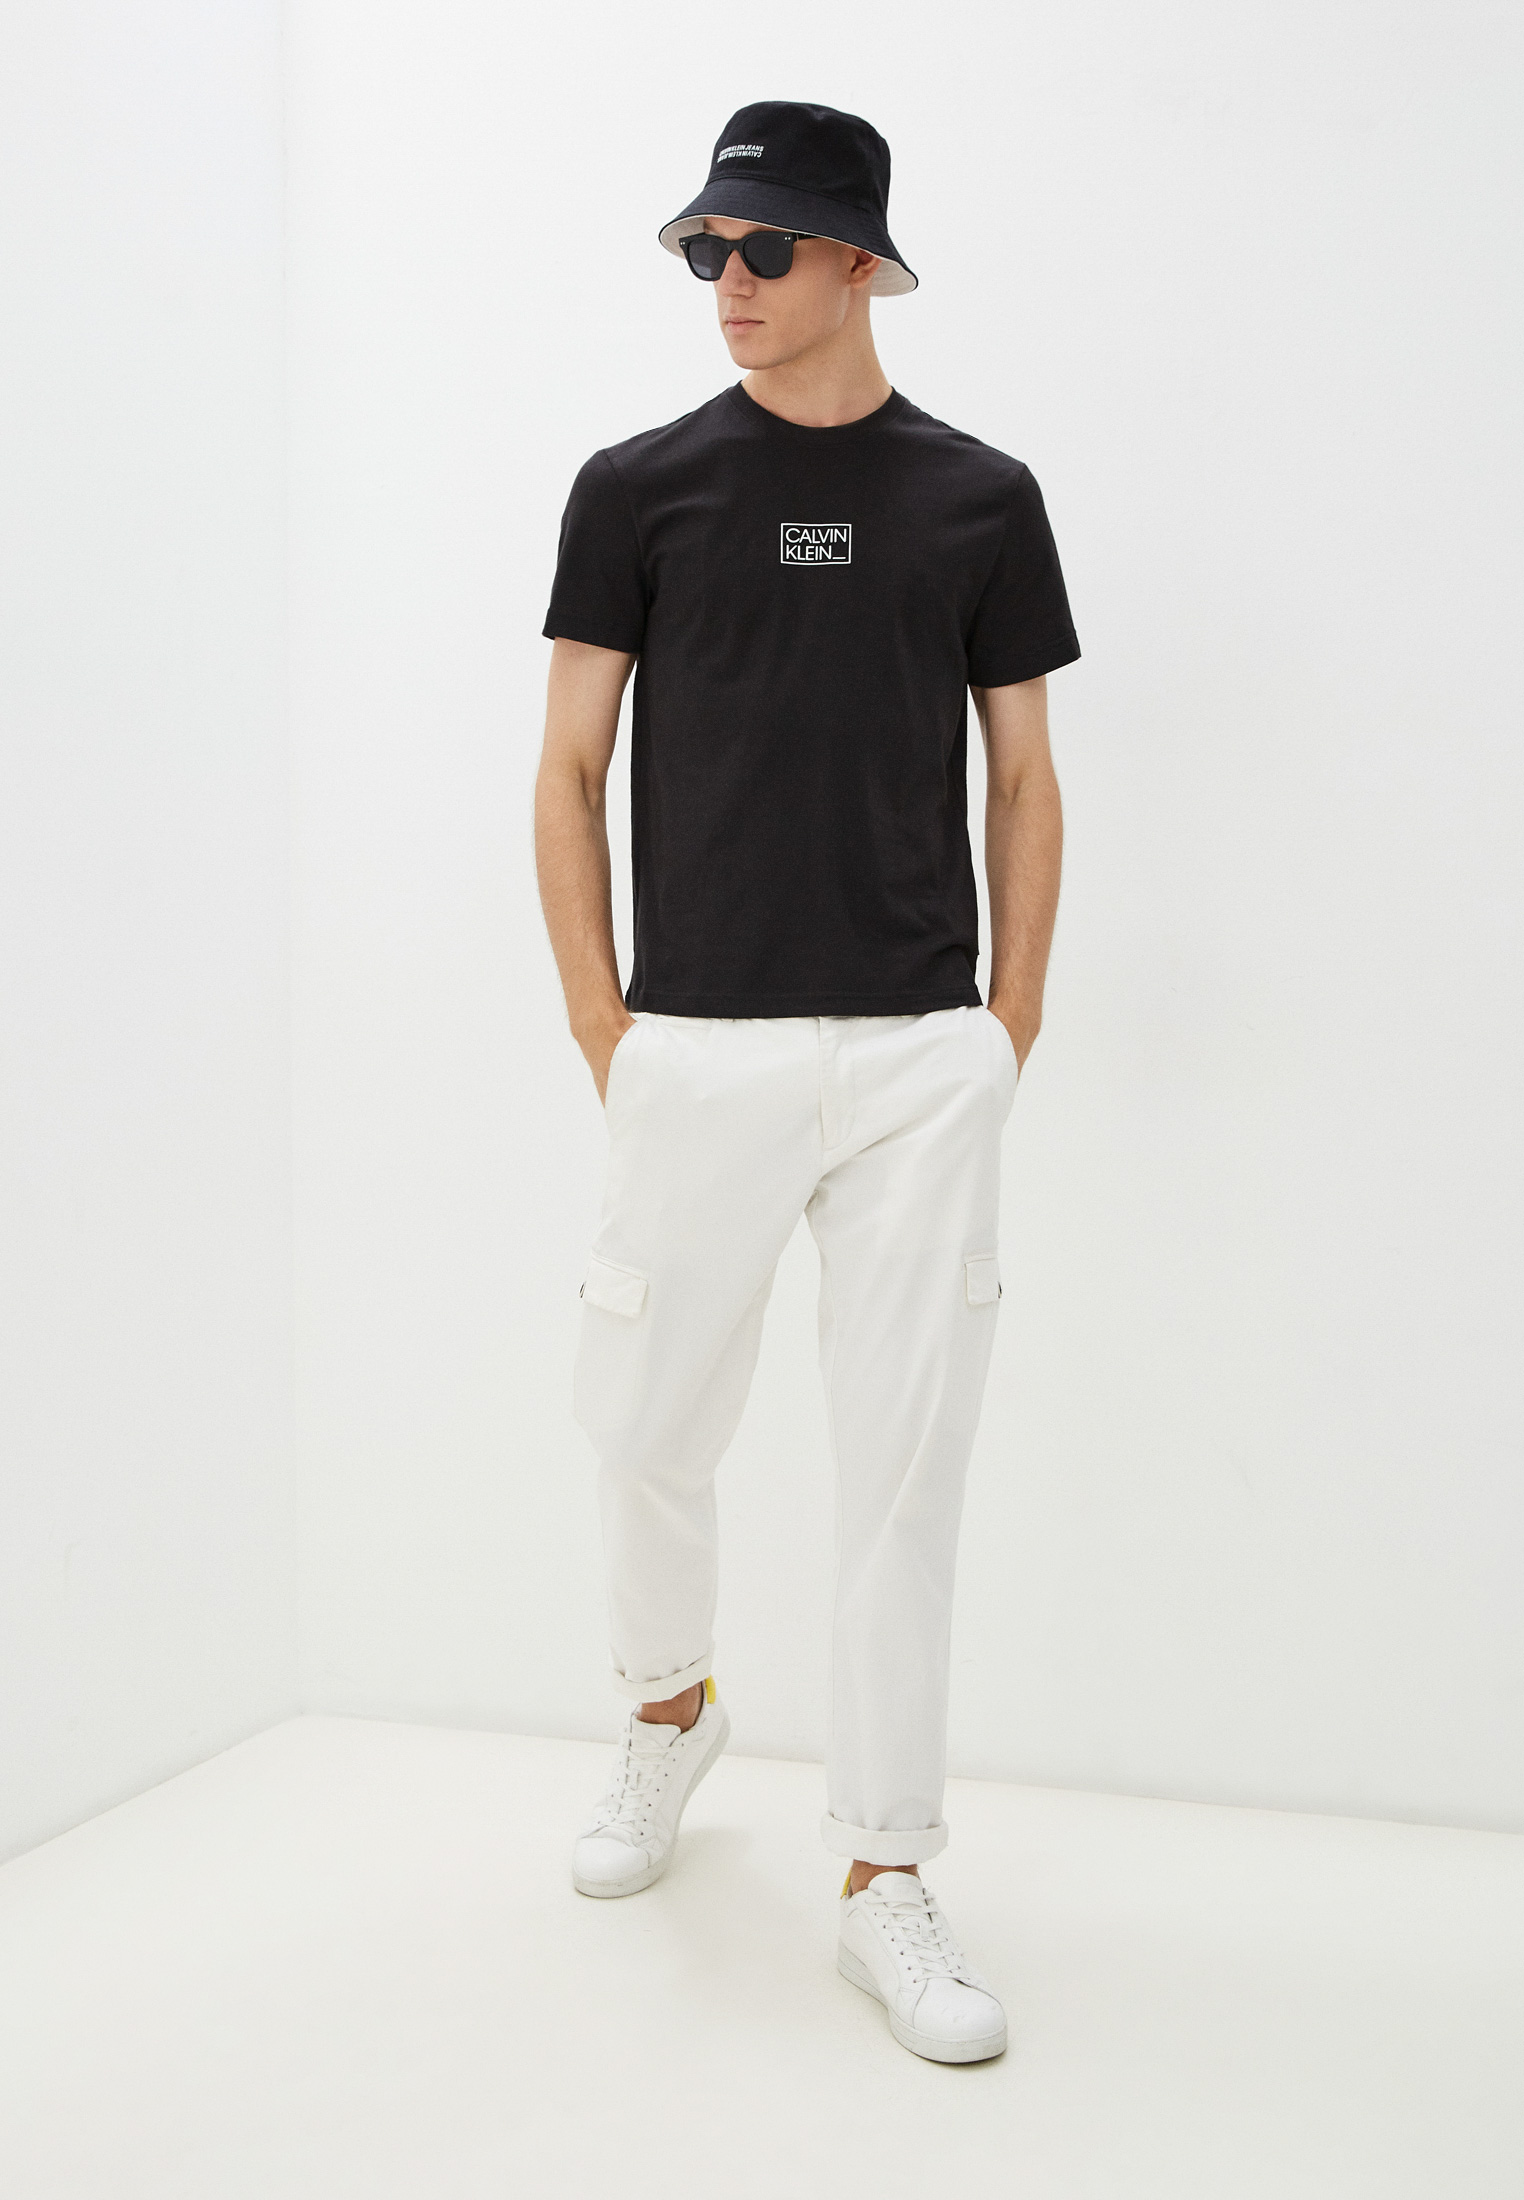 Мужская футболка Calvin Klein (Кельвин Кляйн) K10K107714: изображение 3